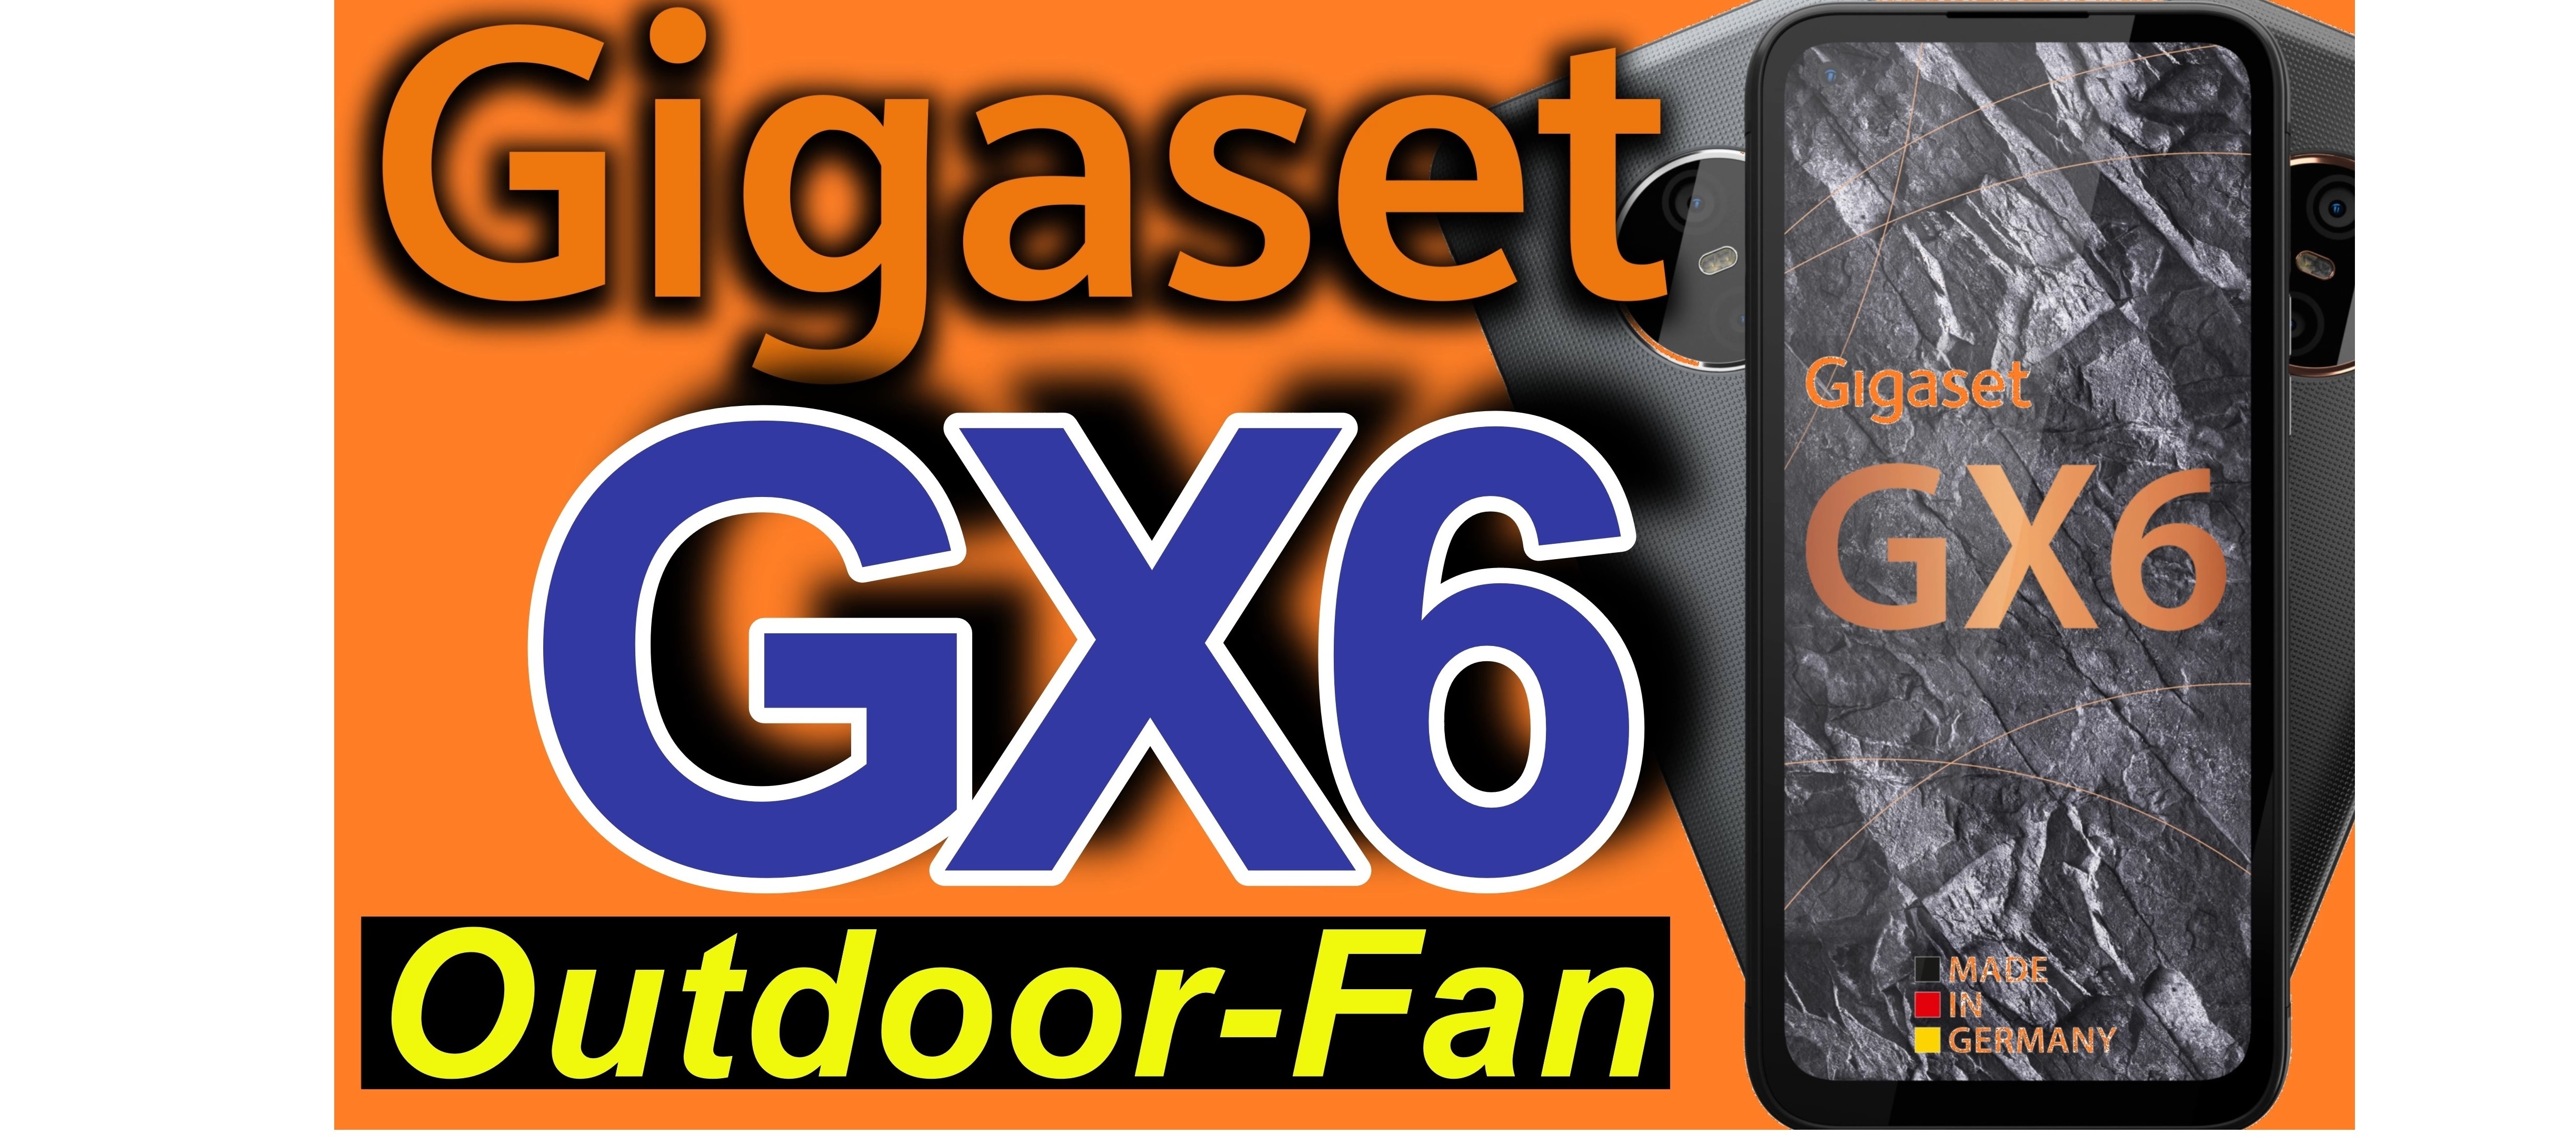 Gigaset GX6 - wieviel edles Outdoor steckt drin?